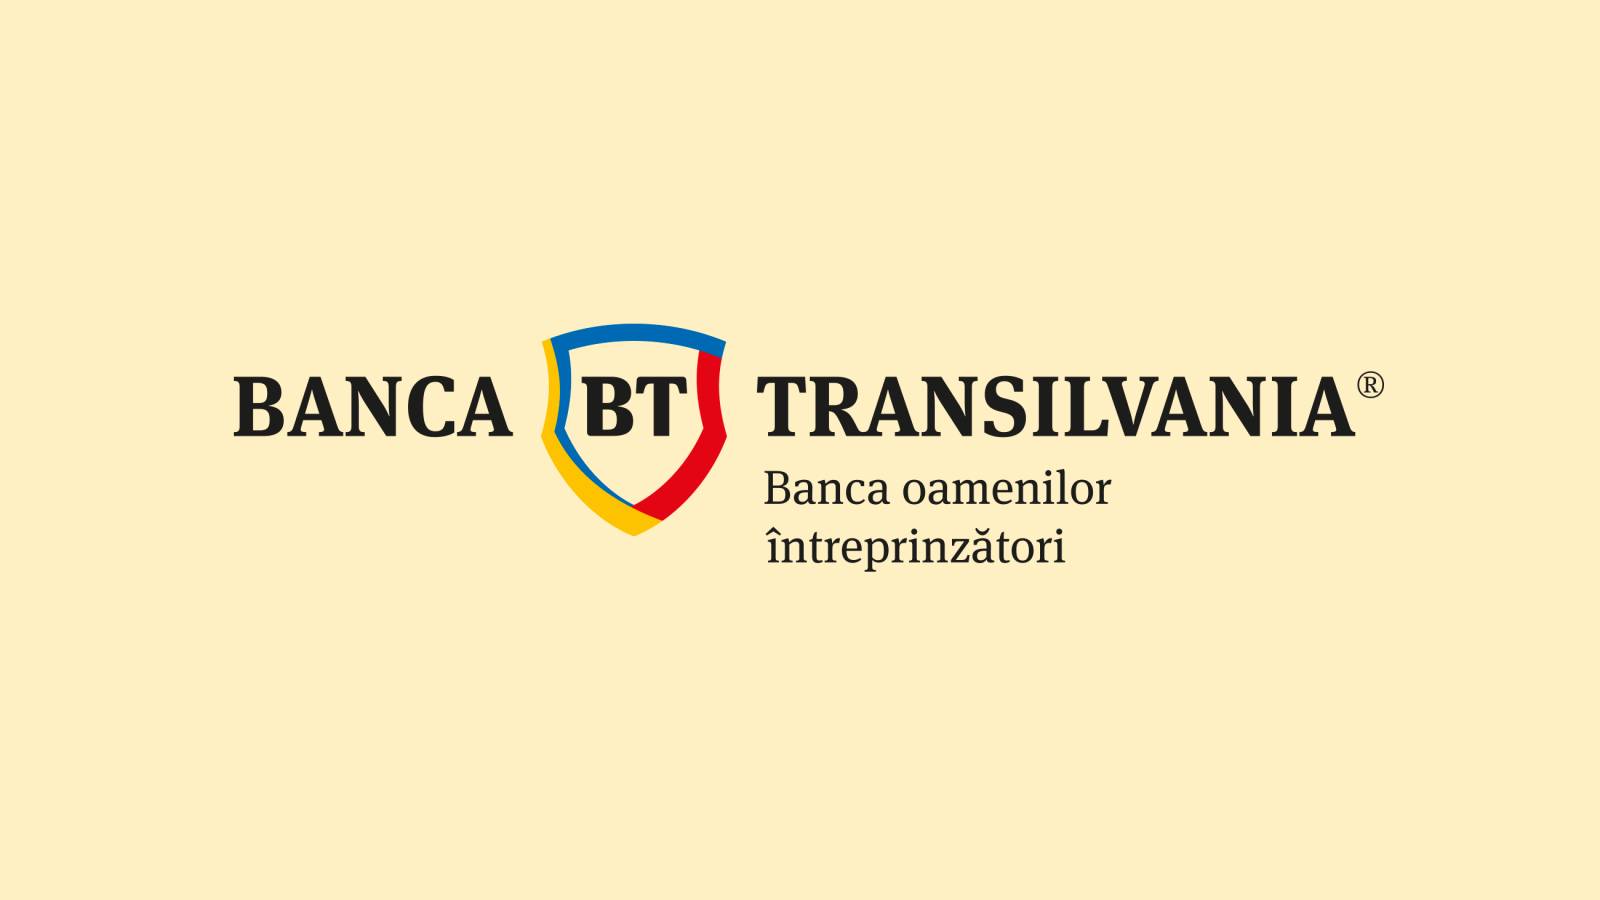 BANCA Transilvania Mesure officielle de LAST MINUTE exclusive aujourd'hui aux clients roumains